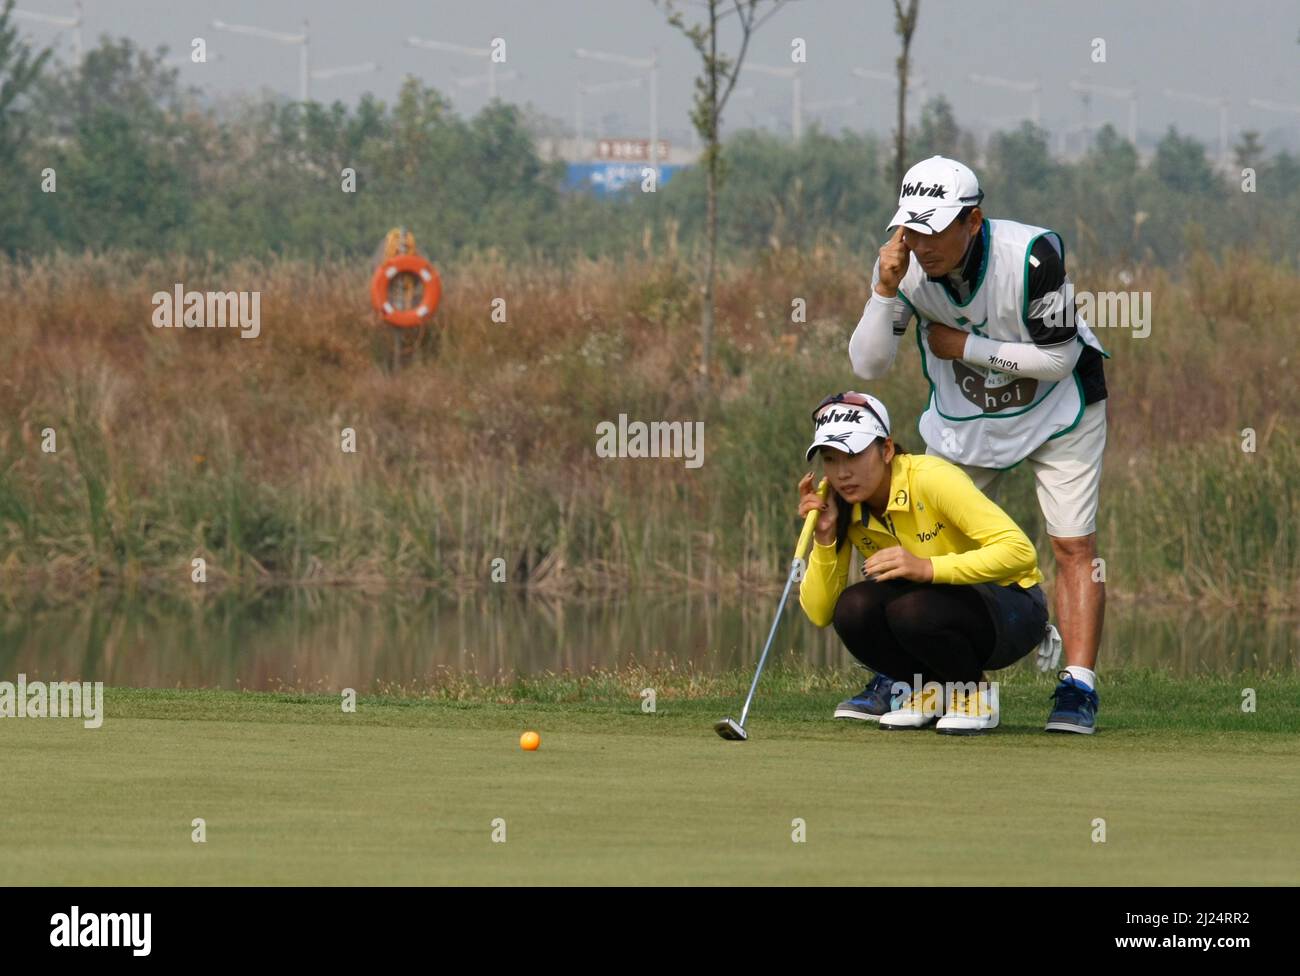 8 octobre 2011-Incheon, Corée du Sud-CHOI, Chella de Corée du Sud, a aligné un putt sur le 3th trous lors du championnat LPGA par Hana Bank au club de golf SKY72 à Incheon le 8 octobre 2011, Corée du Sud. Banque D'Images